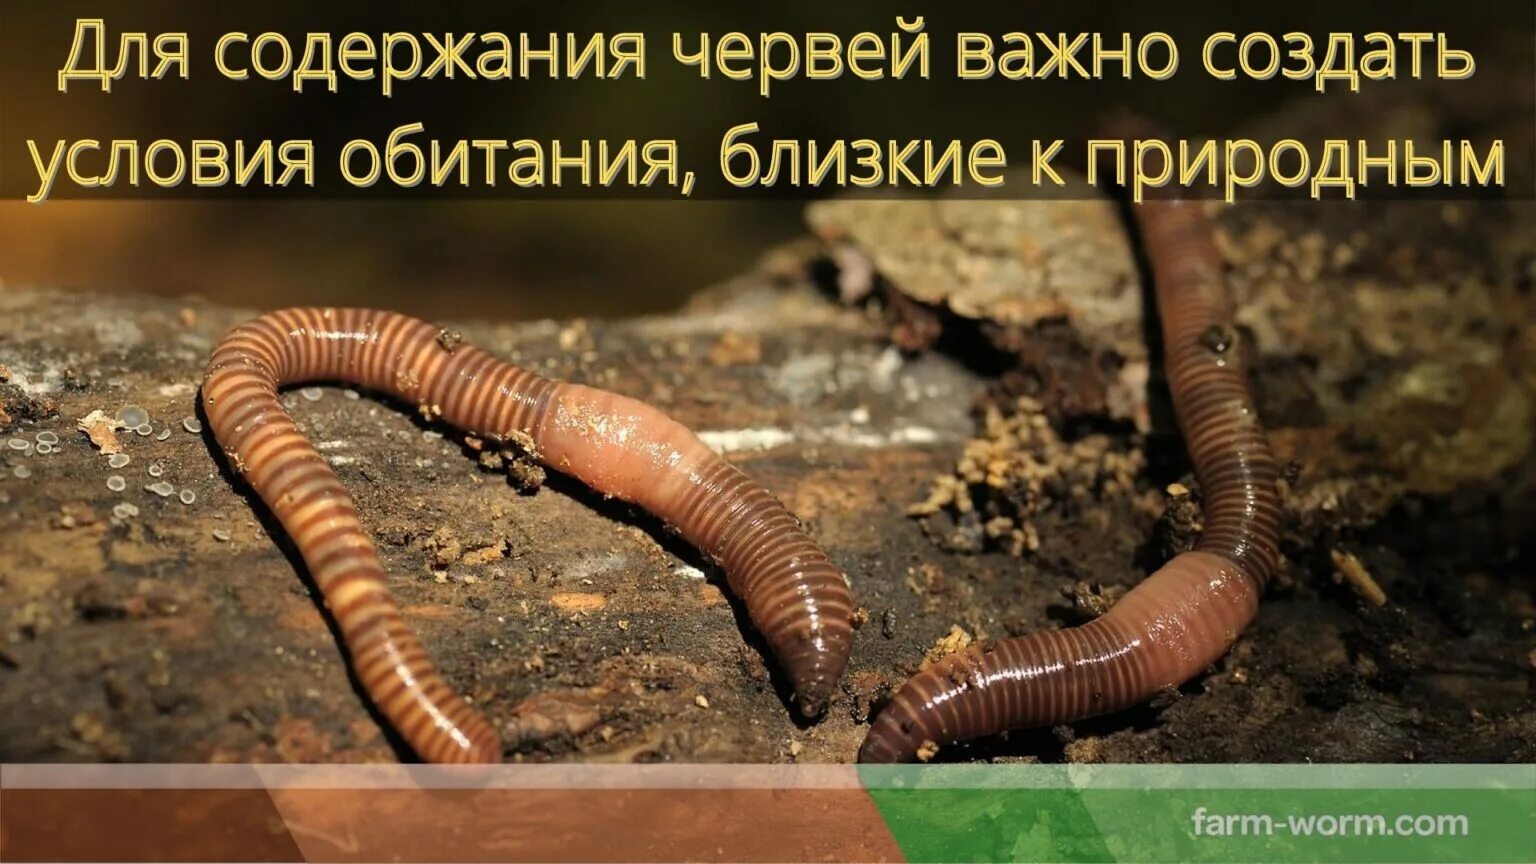 Дождевой червь это какой червь. Малощетинковые дождевой червь. Эйзения Малевича (Eisenia Malevici).